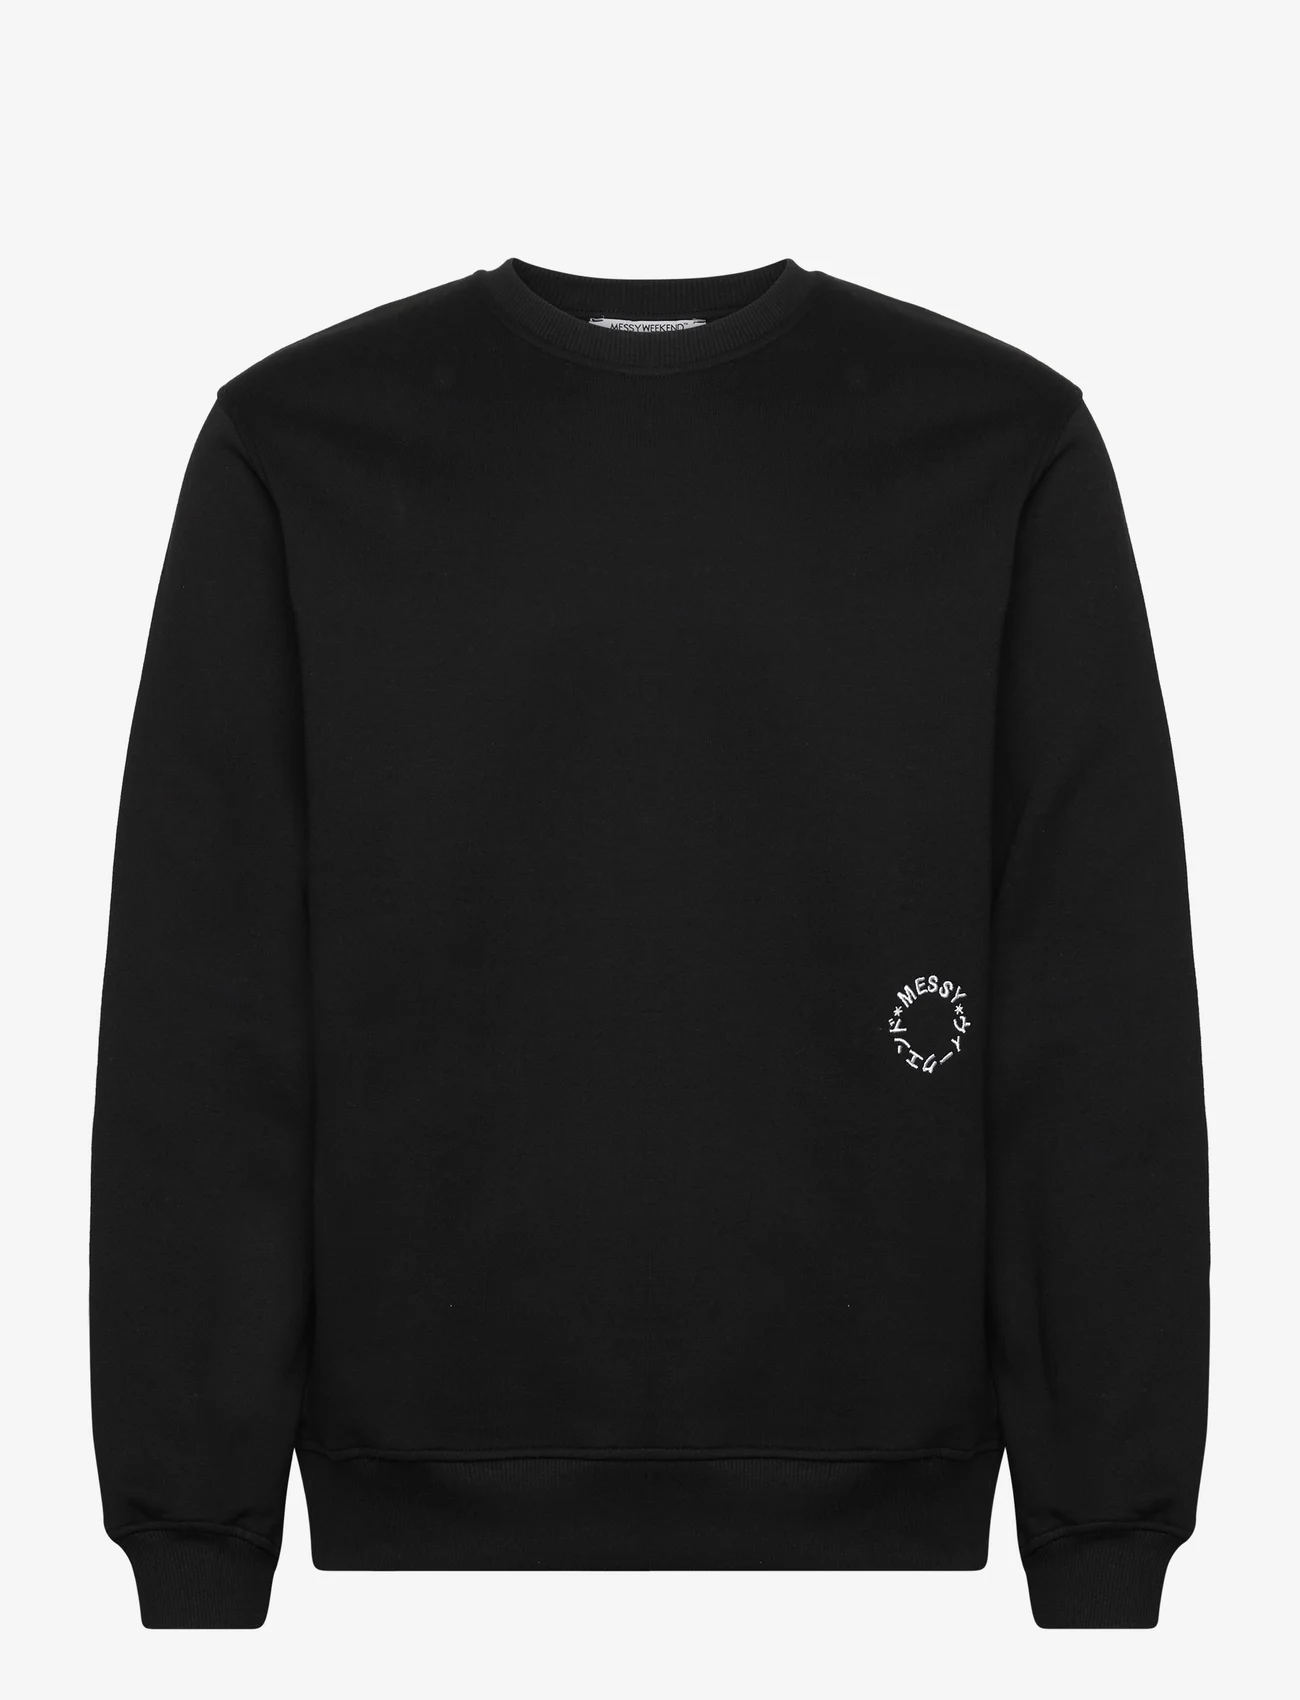 MessyWeekend - SWEATSHIRT SS23 - sweatshirts & hoodies - black - 0